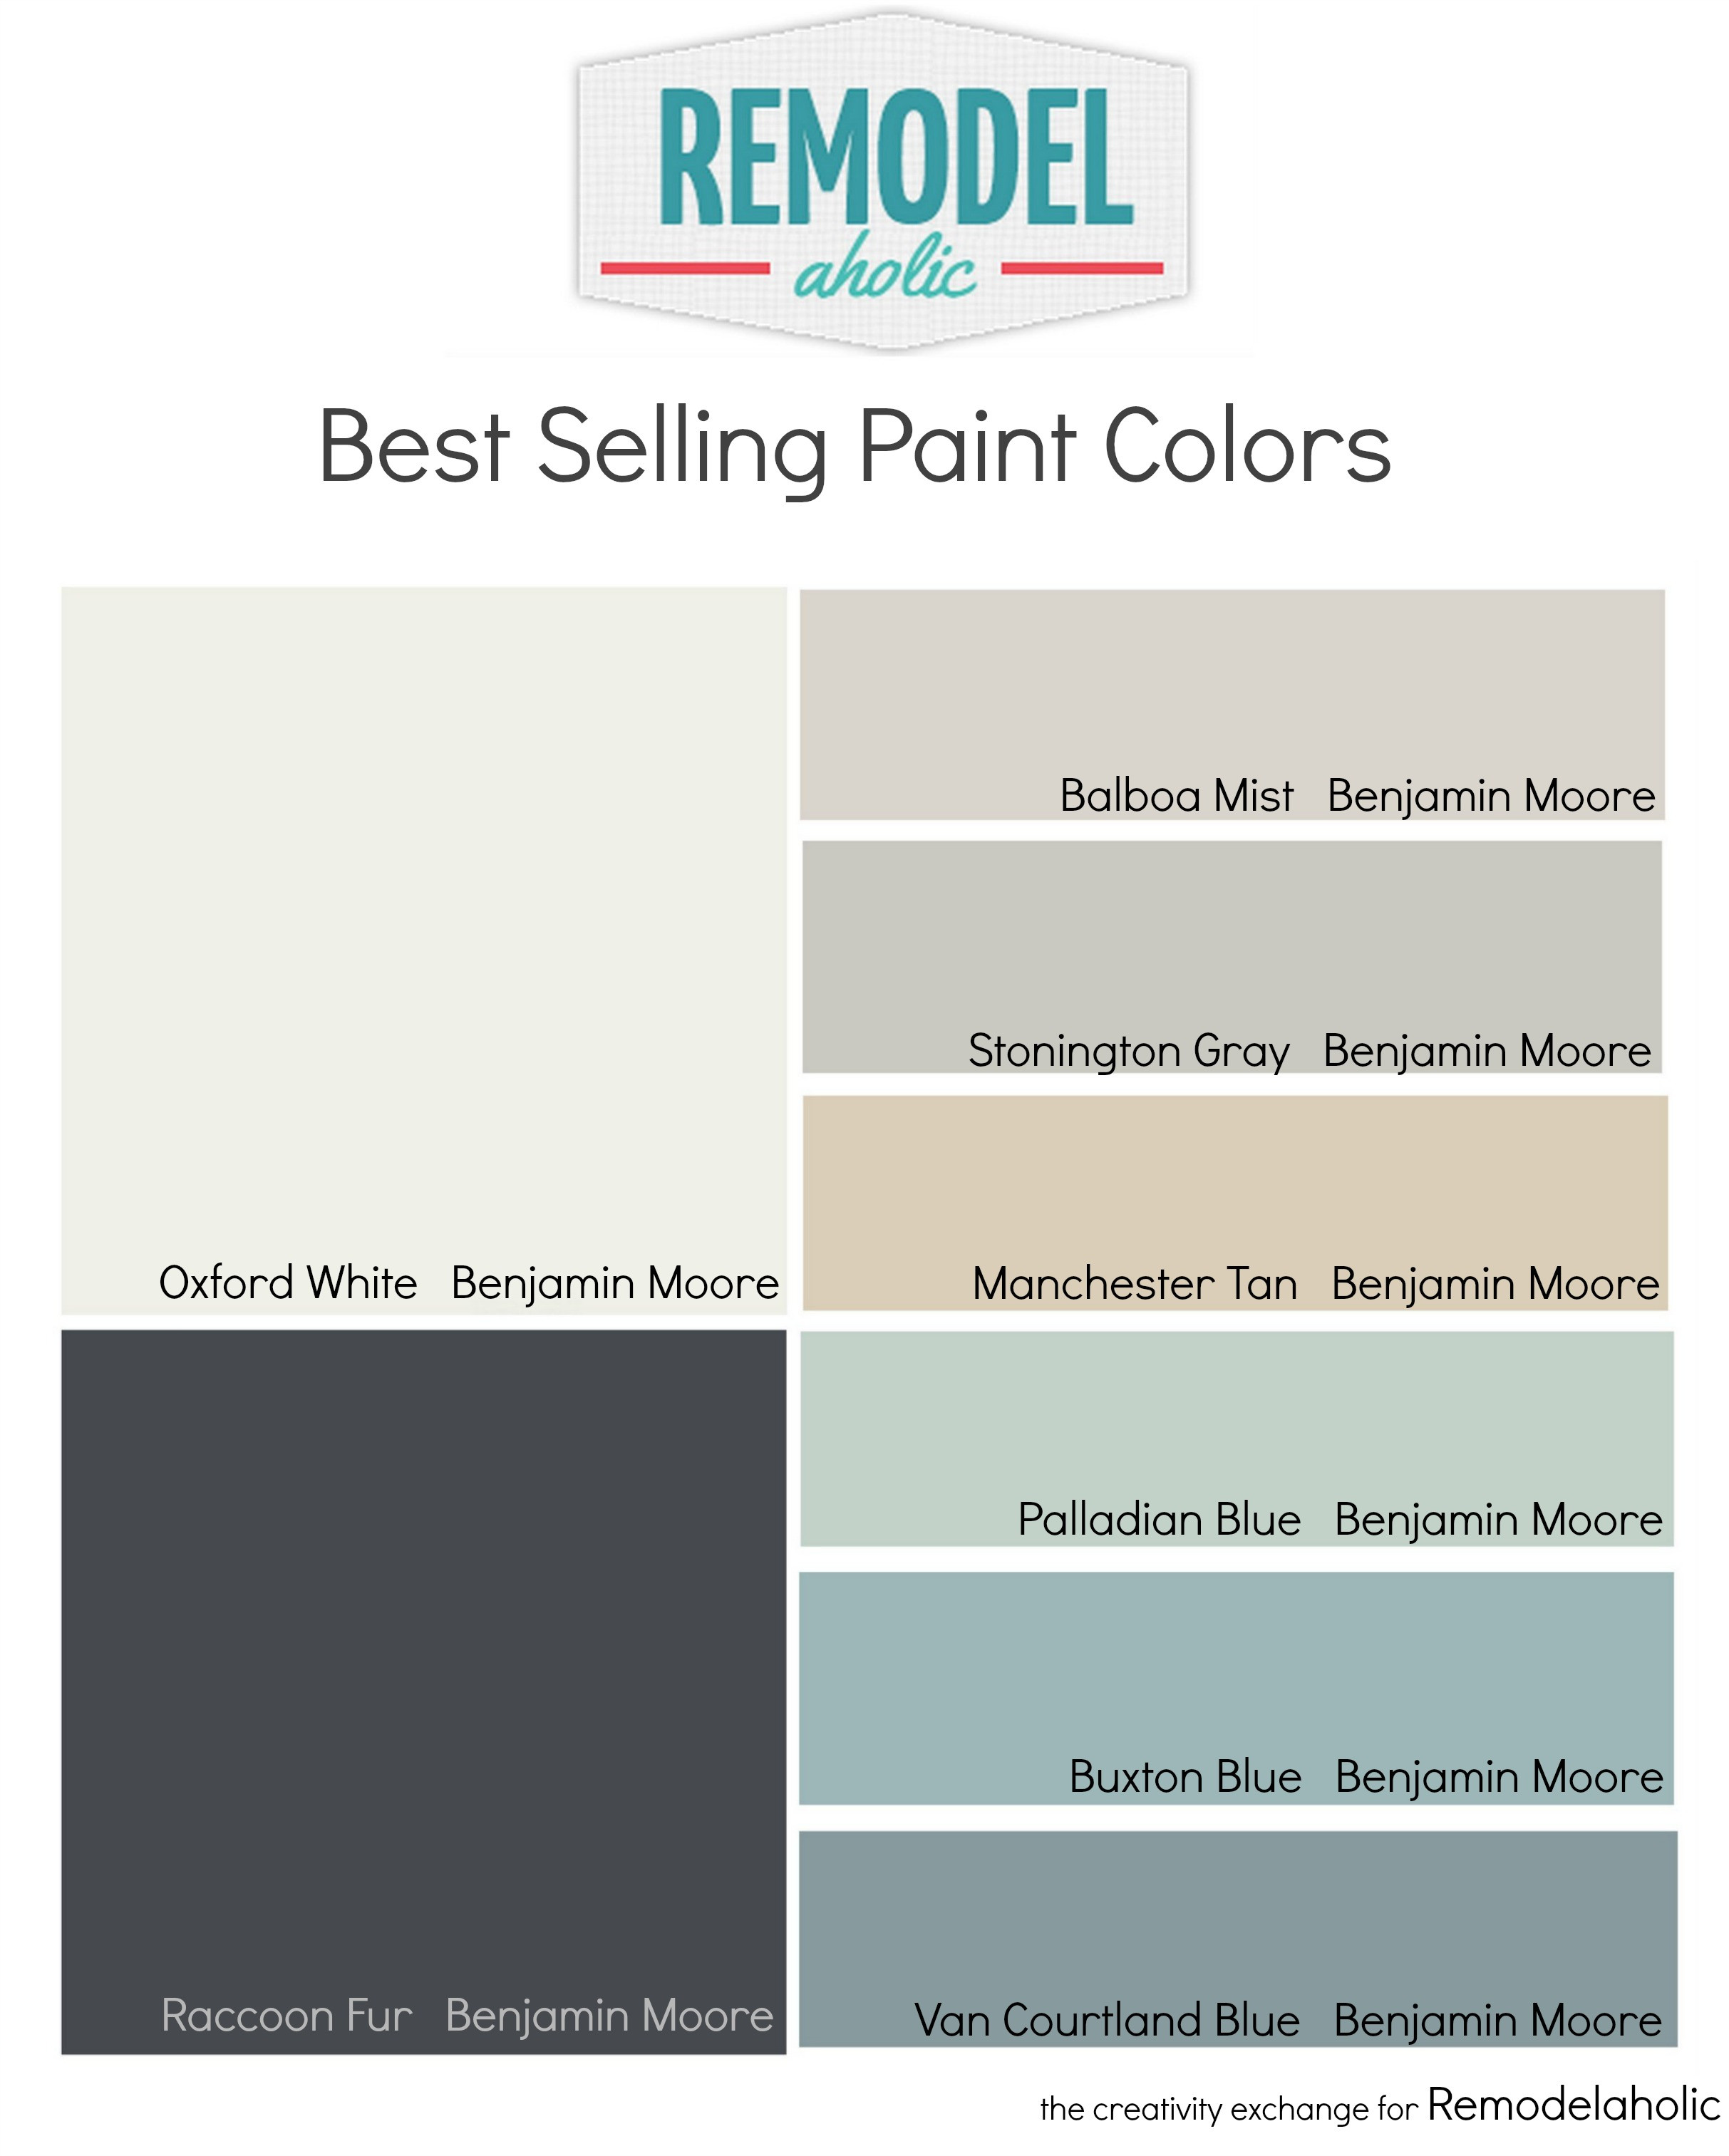 Best ideas about Most Popular Paint Colors
. Save or Pin Most Popular and Best Selling Paint Colors Now.